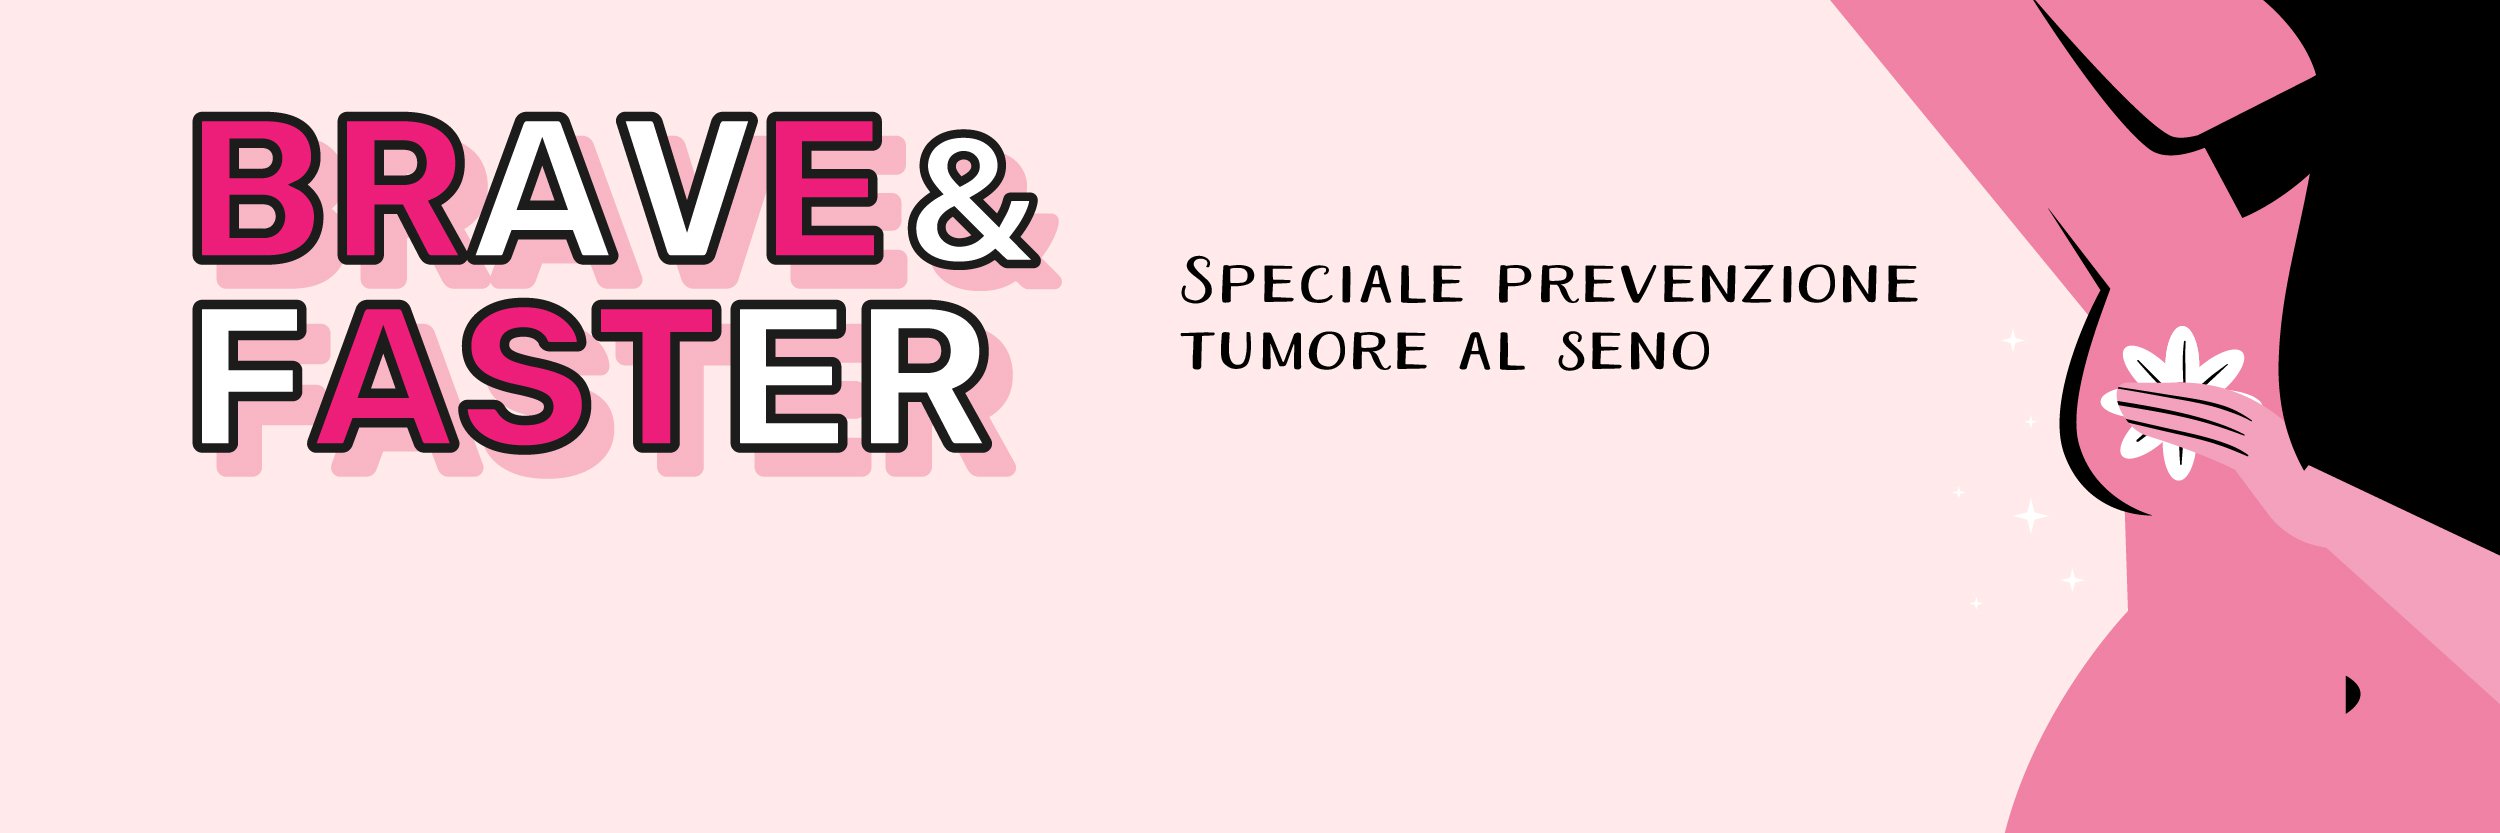 Adriana Bonifacino: cosa fare dopo una diagnosi di tumore al seno